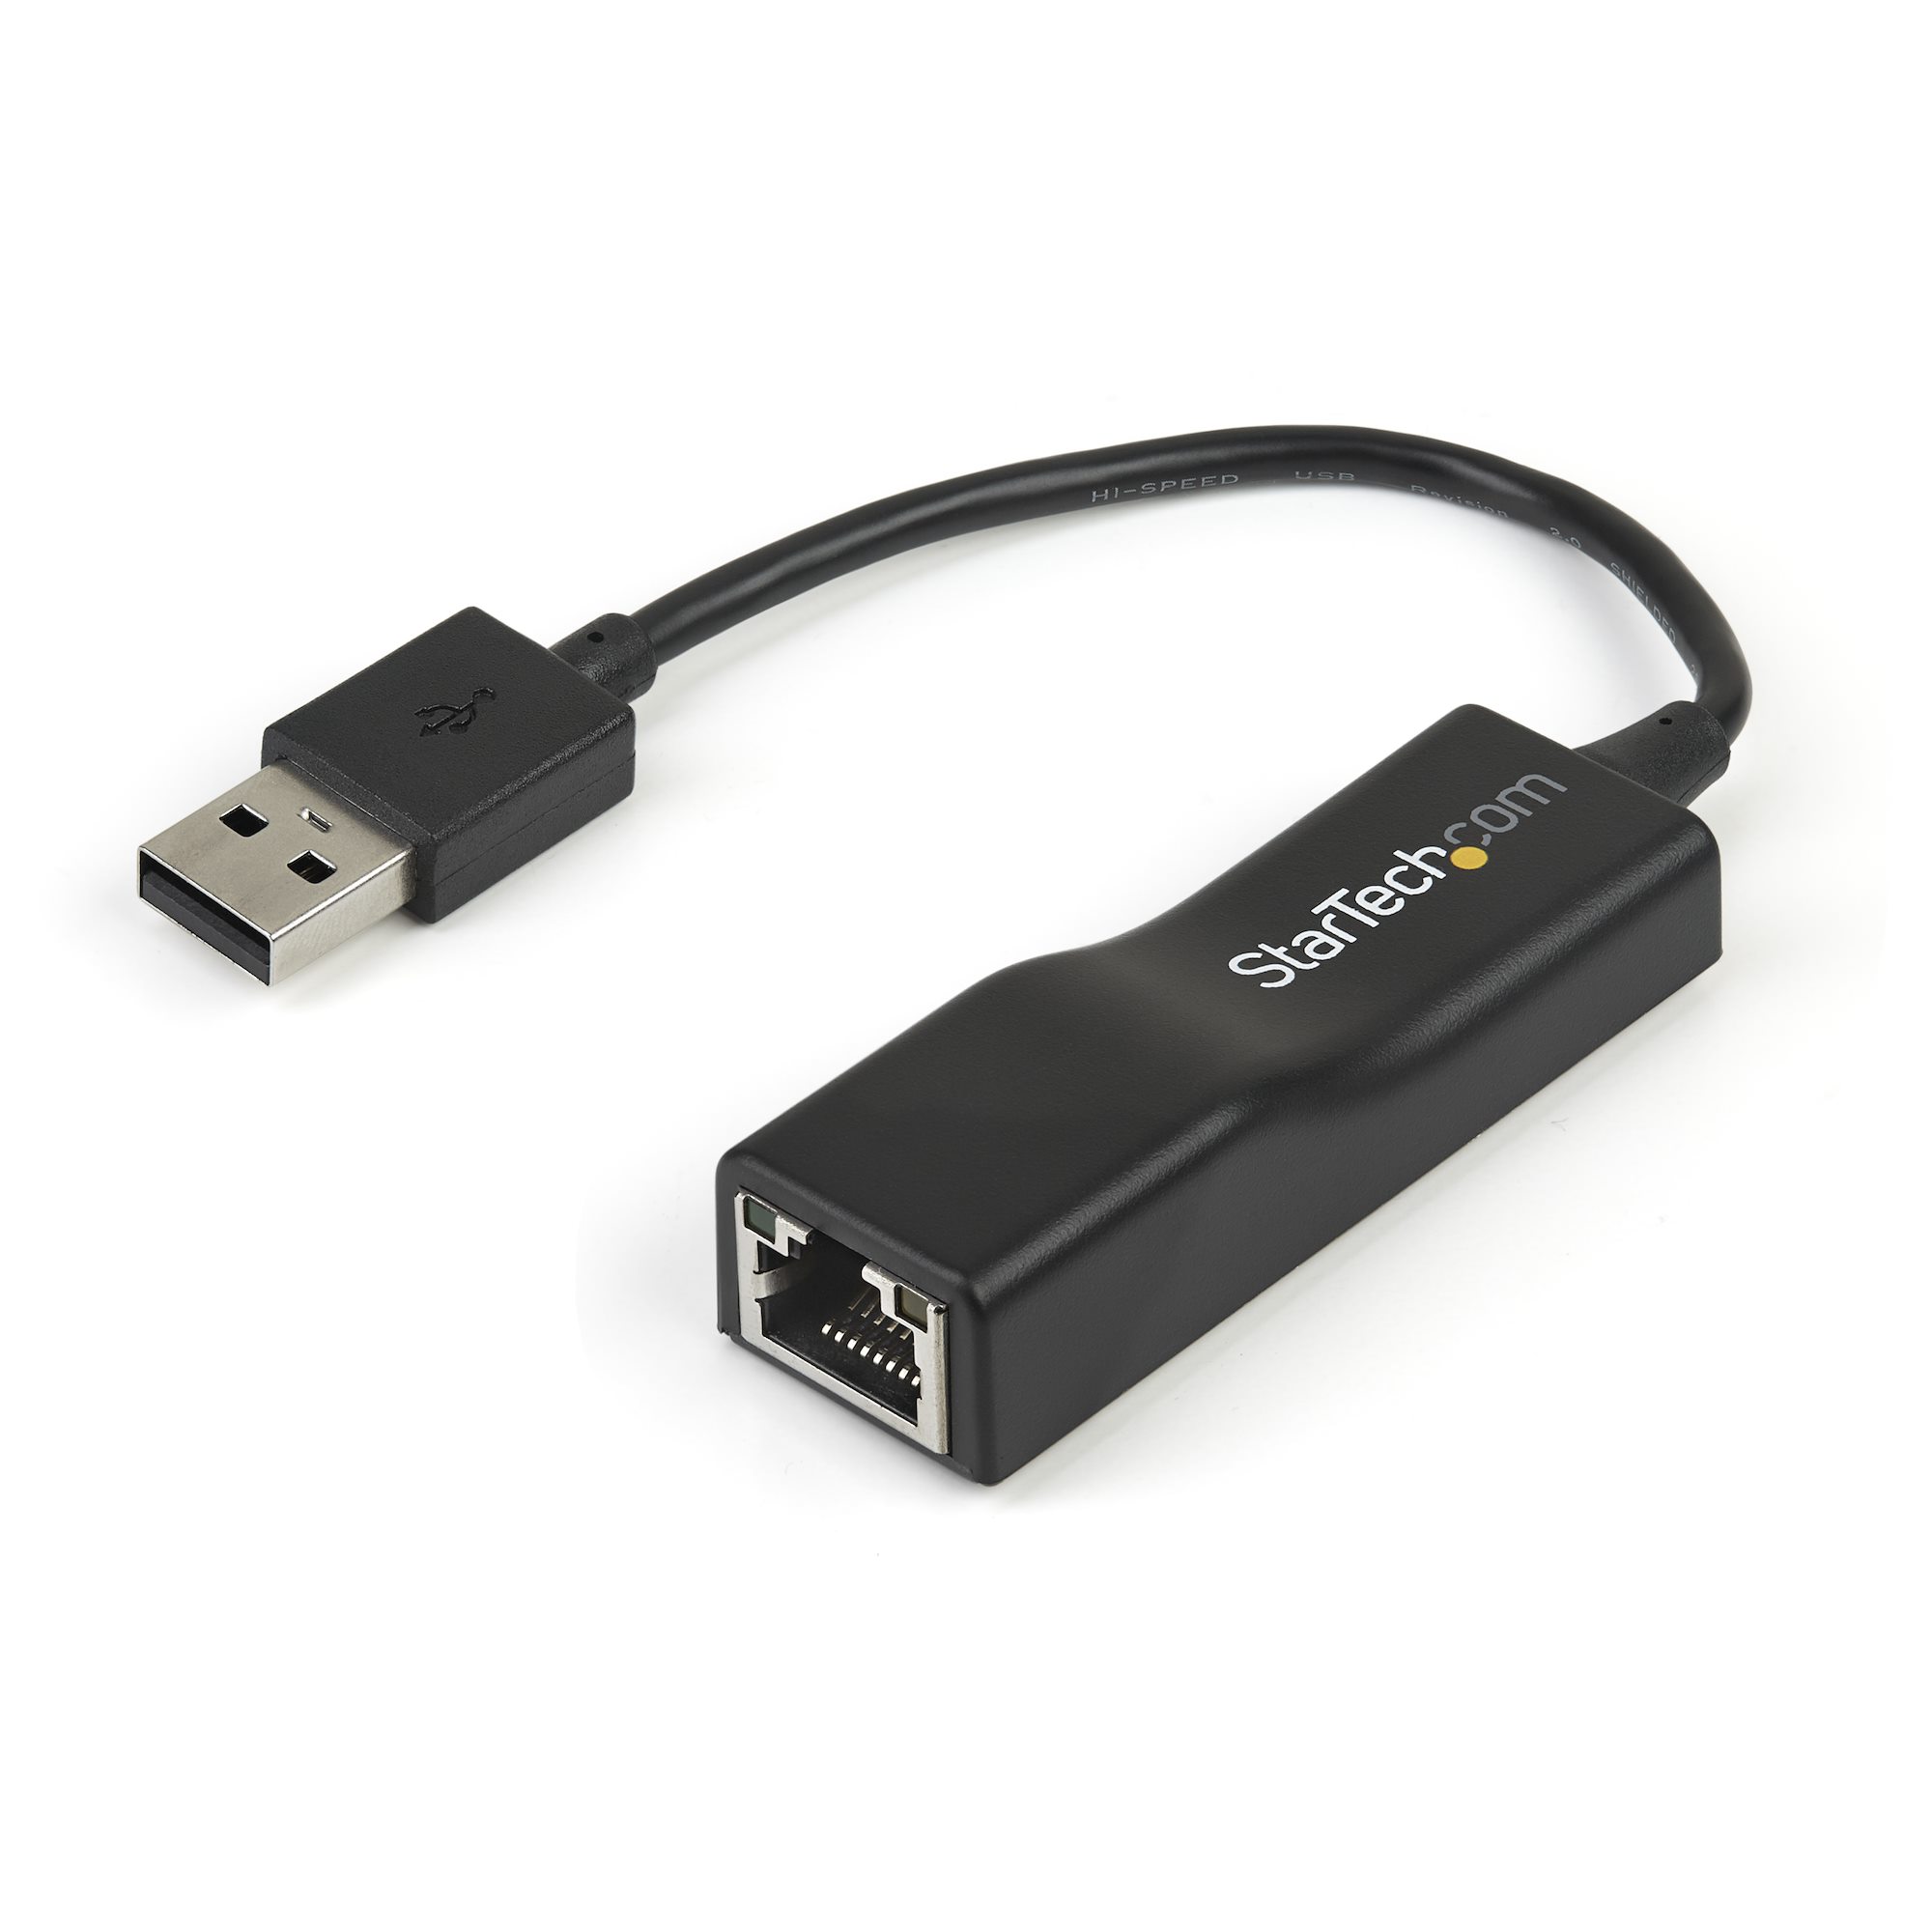 Startech .com USB-C to Ethernet Adapter, 10/100/1000 Mbps, Gigabit